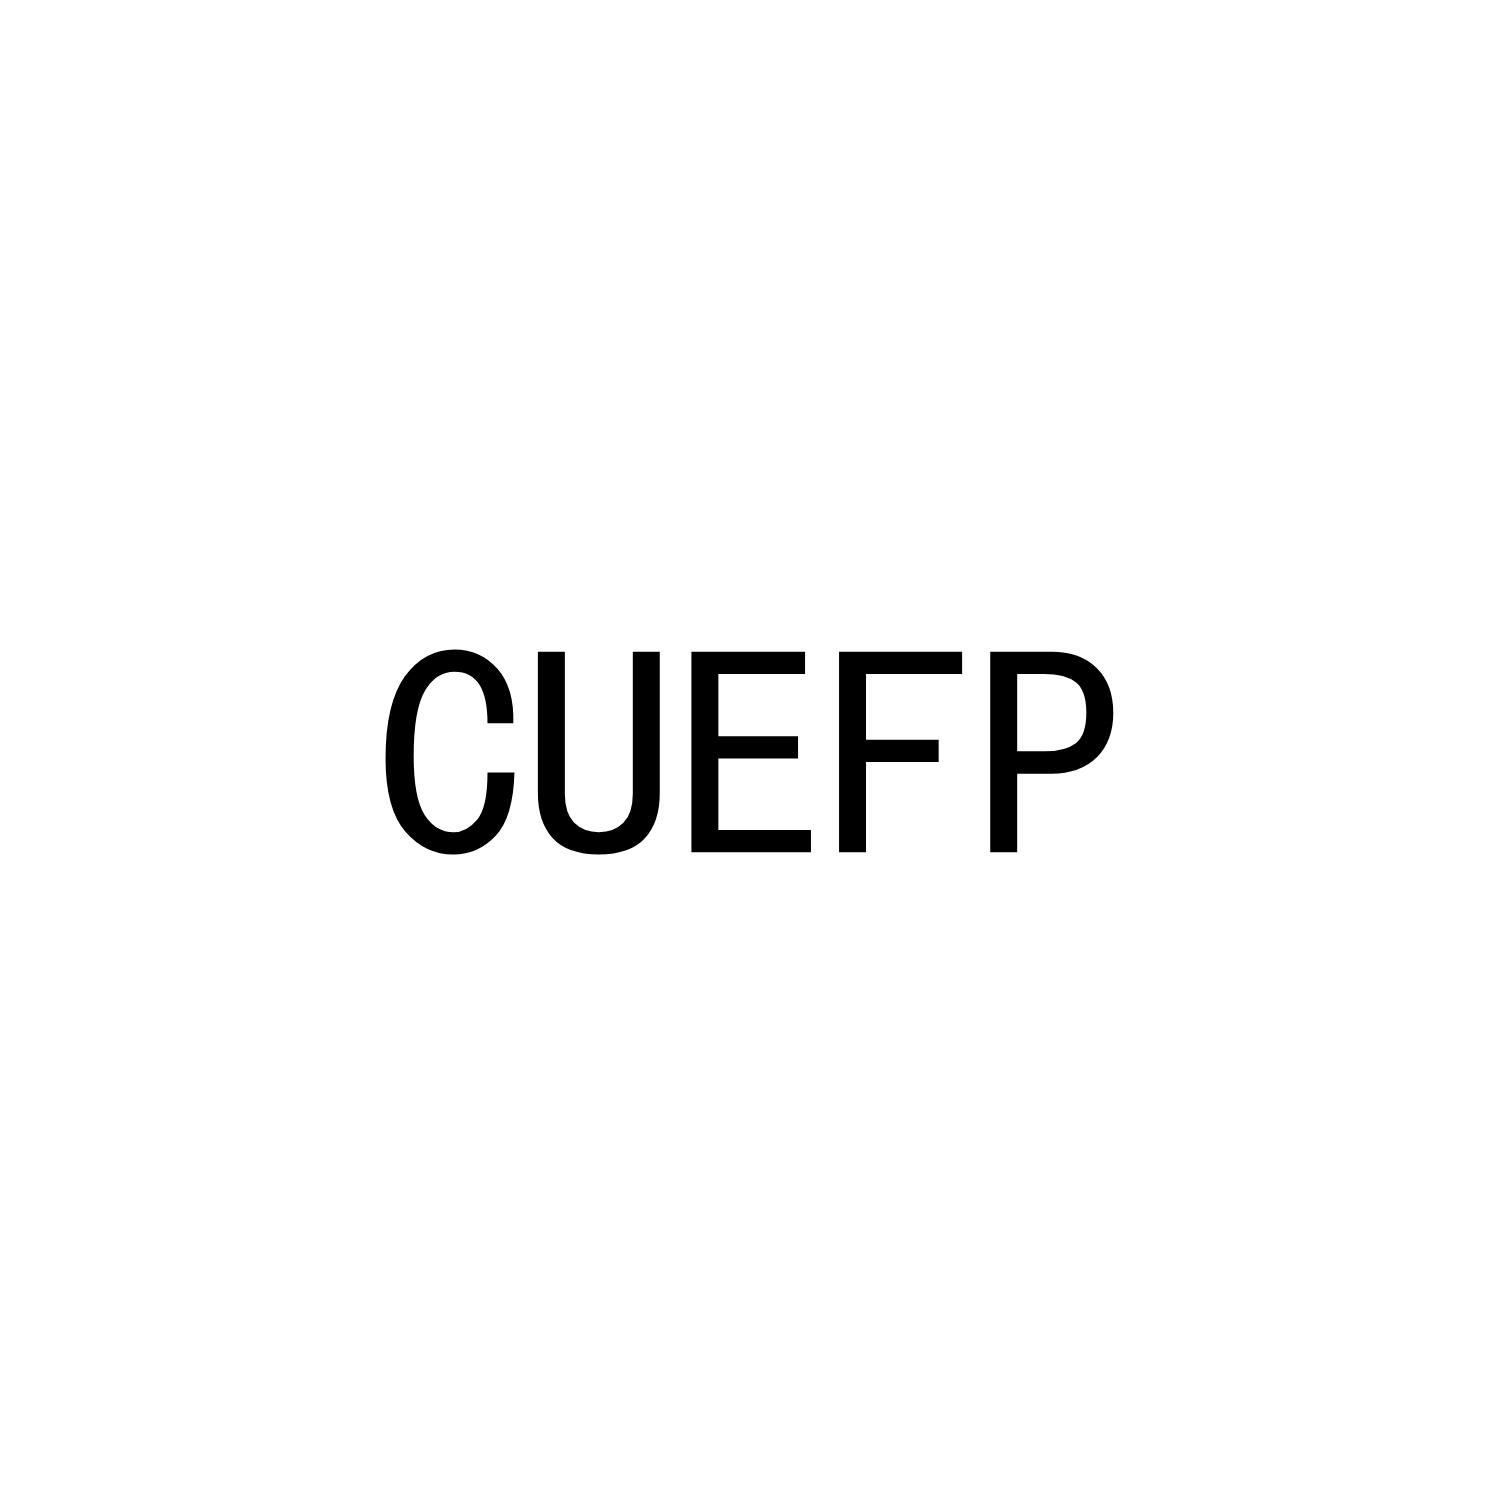 CUEFP